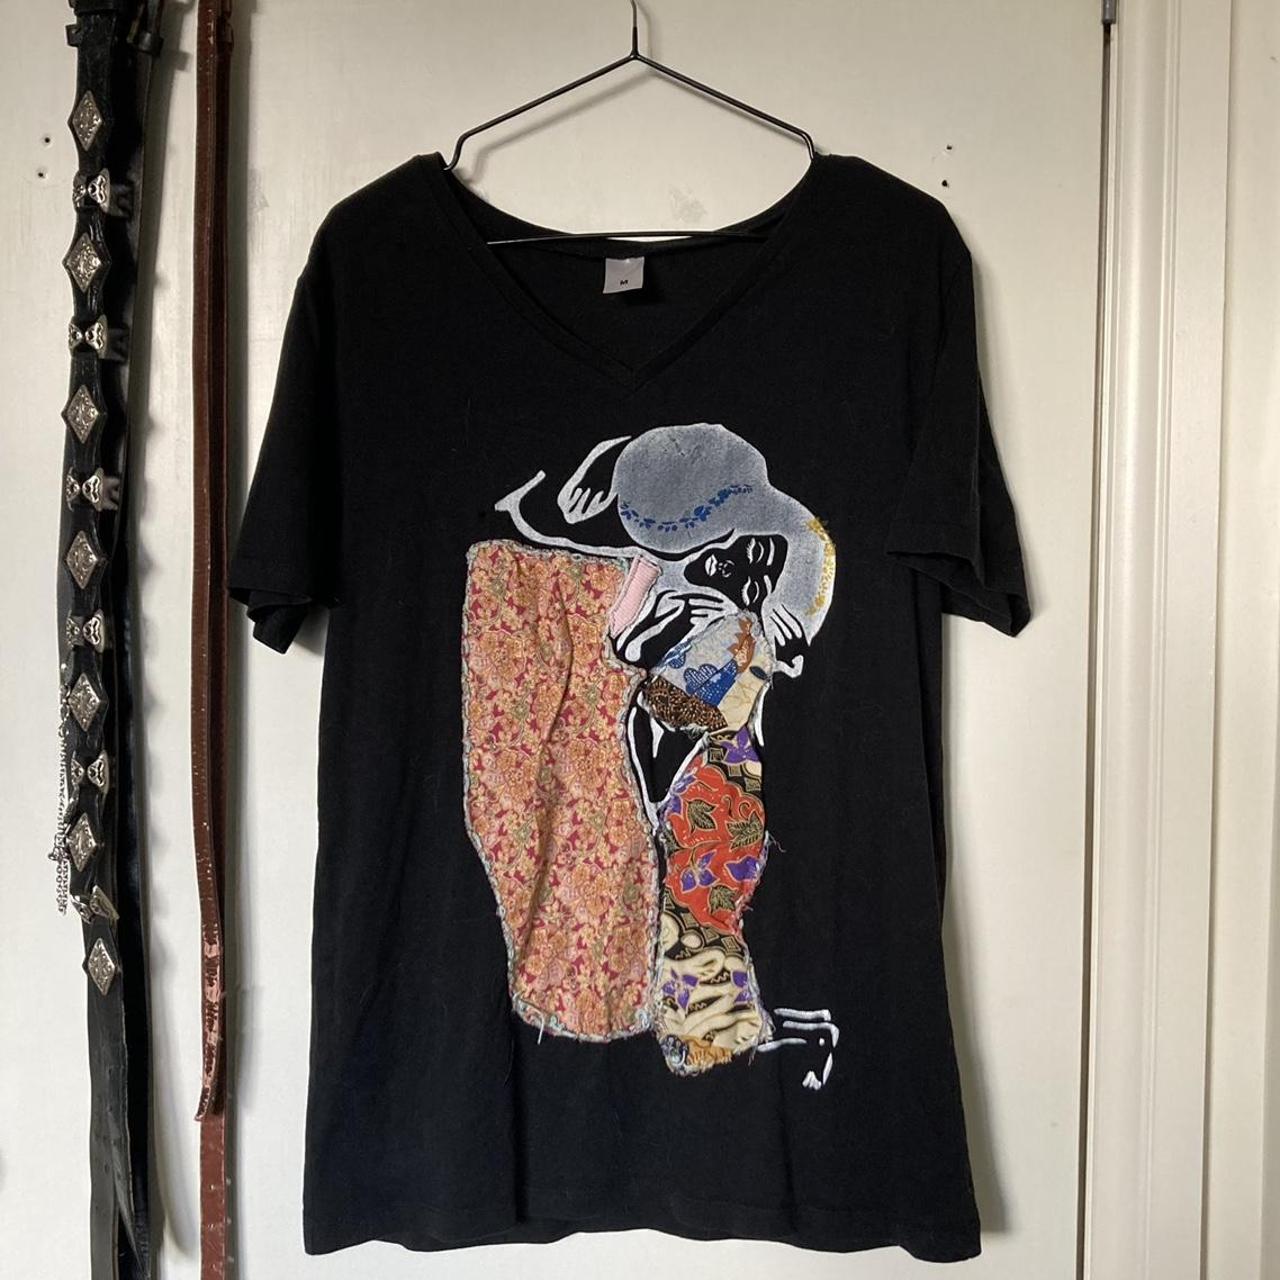 Klimt ‘The Kiss’ Collage Tee Black cotton V-neck... - Depop